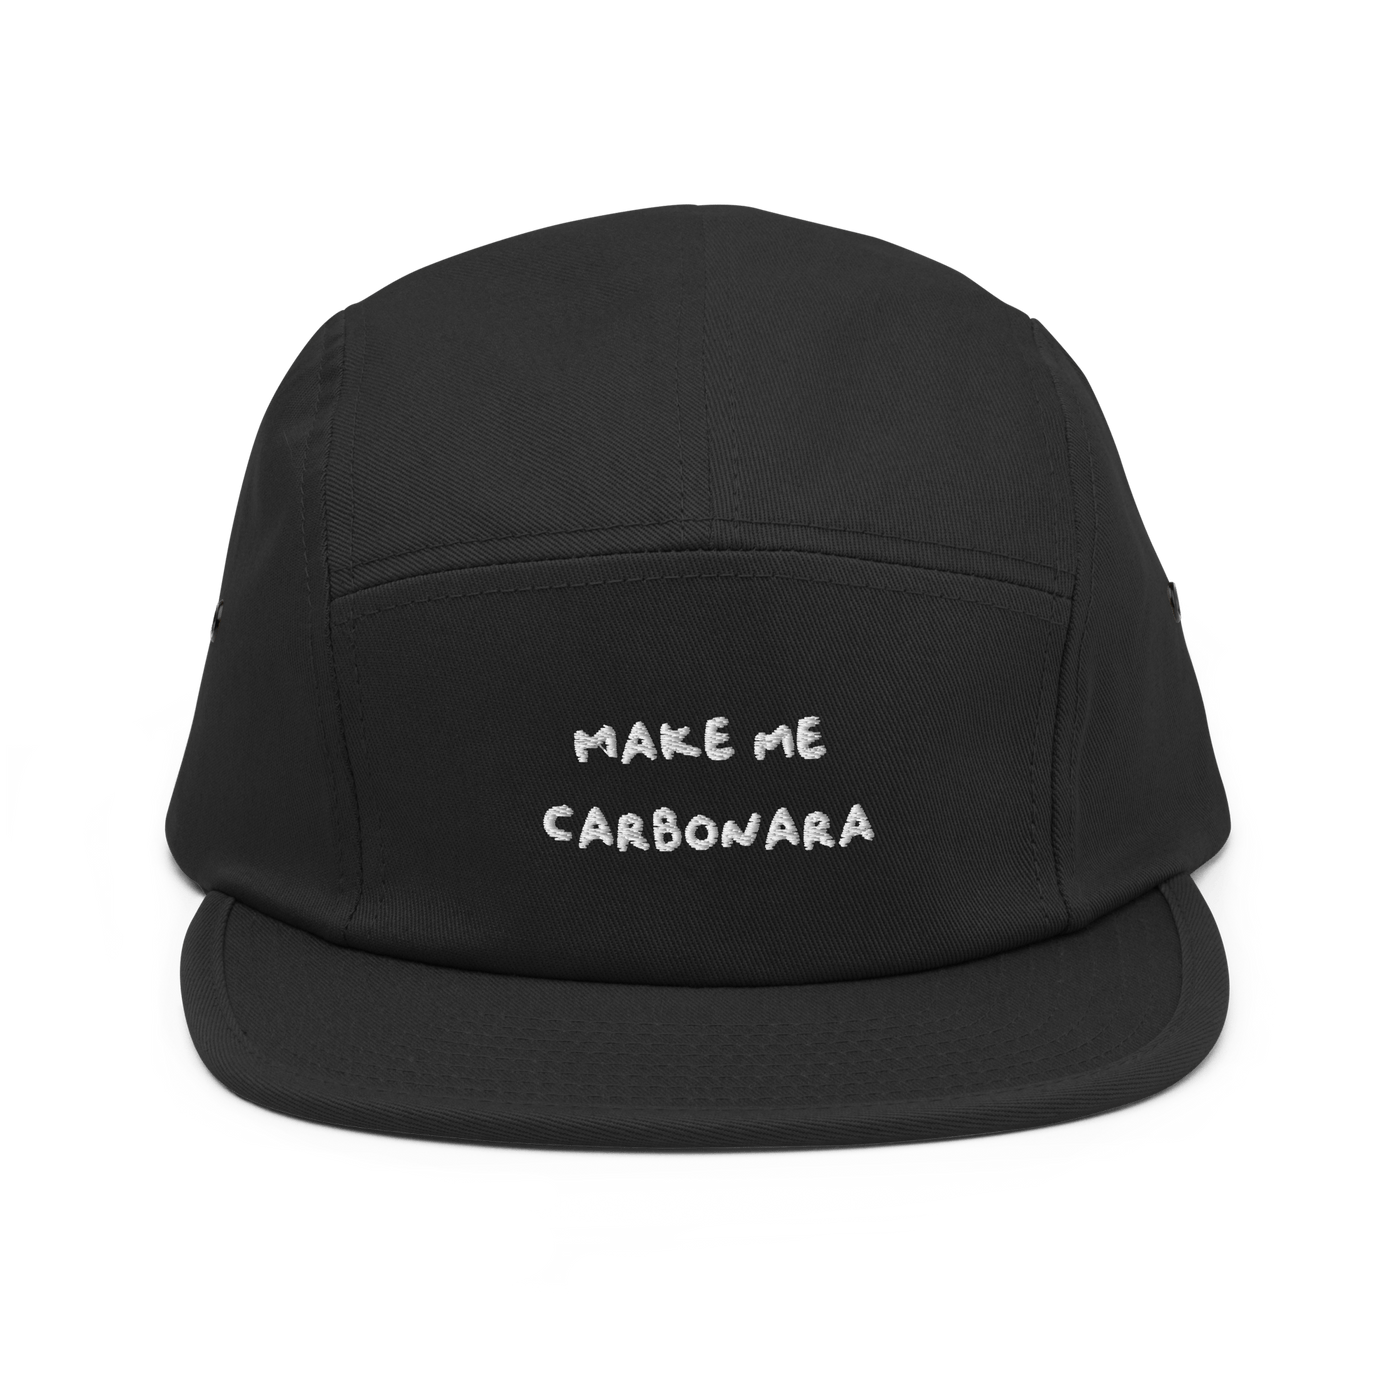 Make me Carbonara Five Panel Hat - Black - - Just Another Cap Store